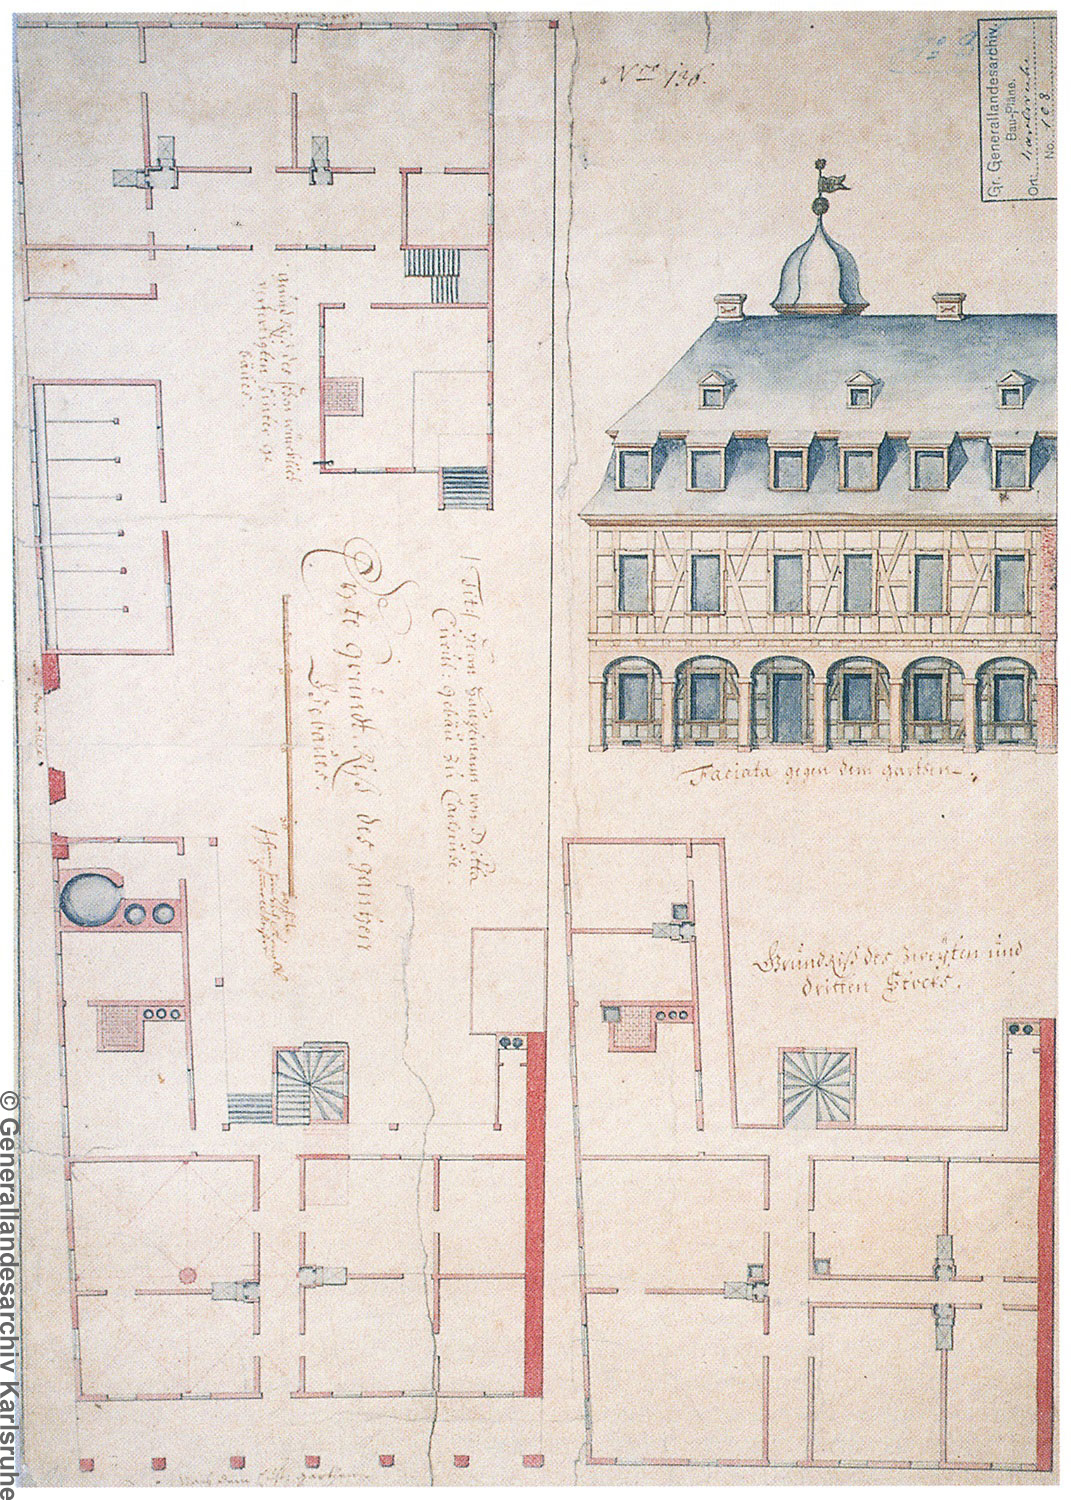 Plan eines Modellhauses von 1717